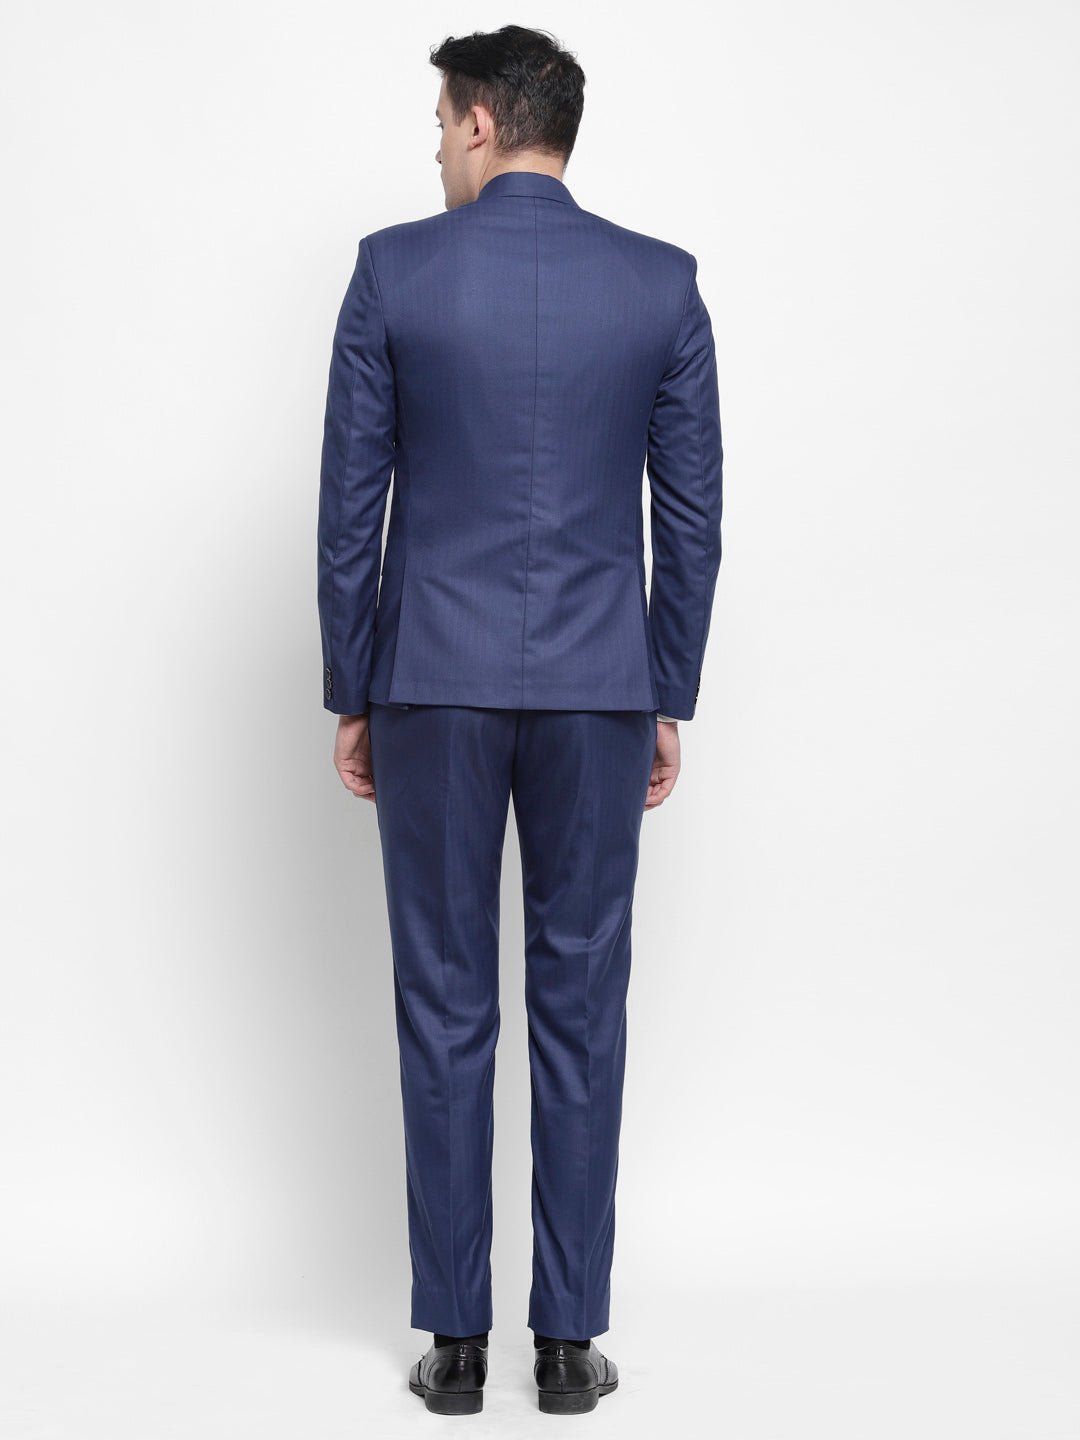 Mens Classic Blue Suit | Royal Blue Suit for Mens - Danezon